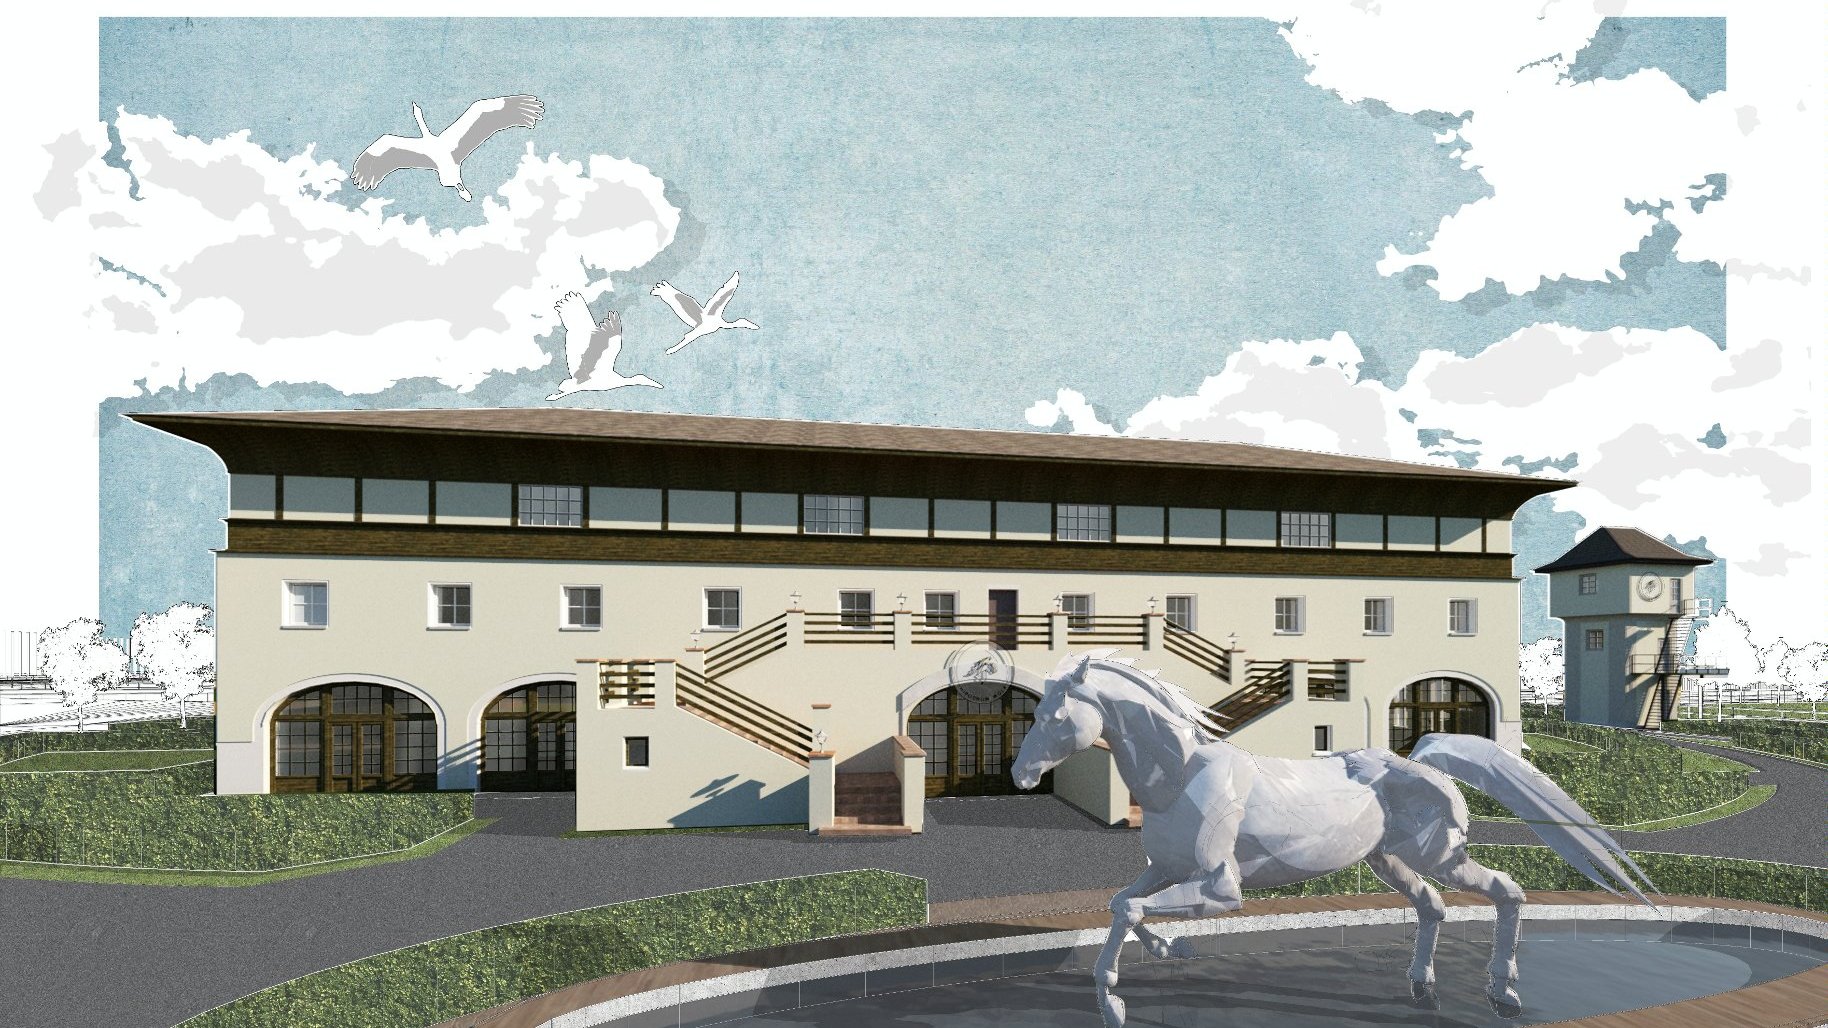 Grafika: poglądowa wizualizacja hipodromu, widać budynek, przed nim biegnie koń